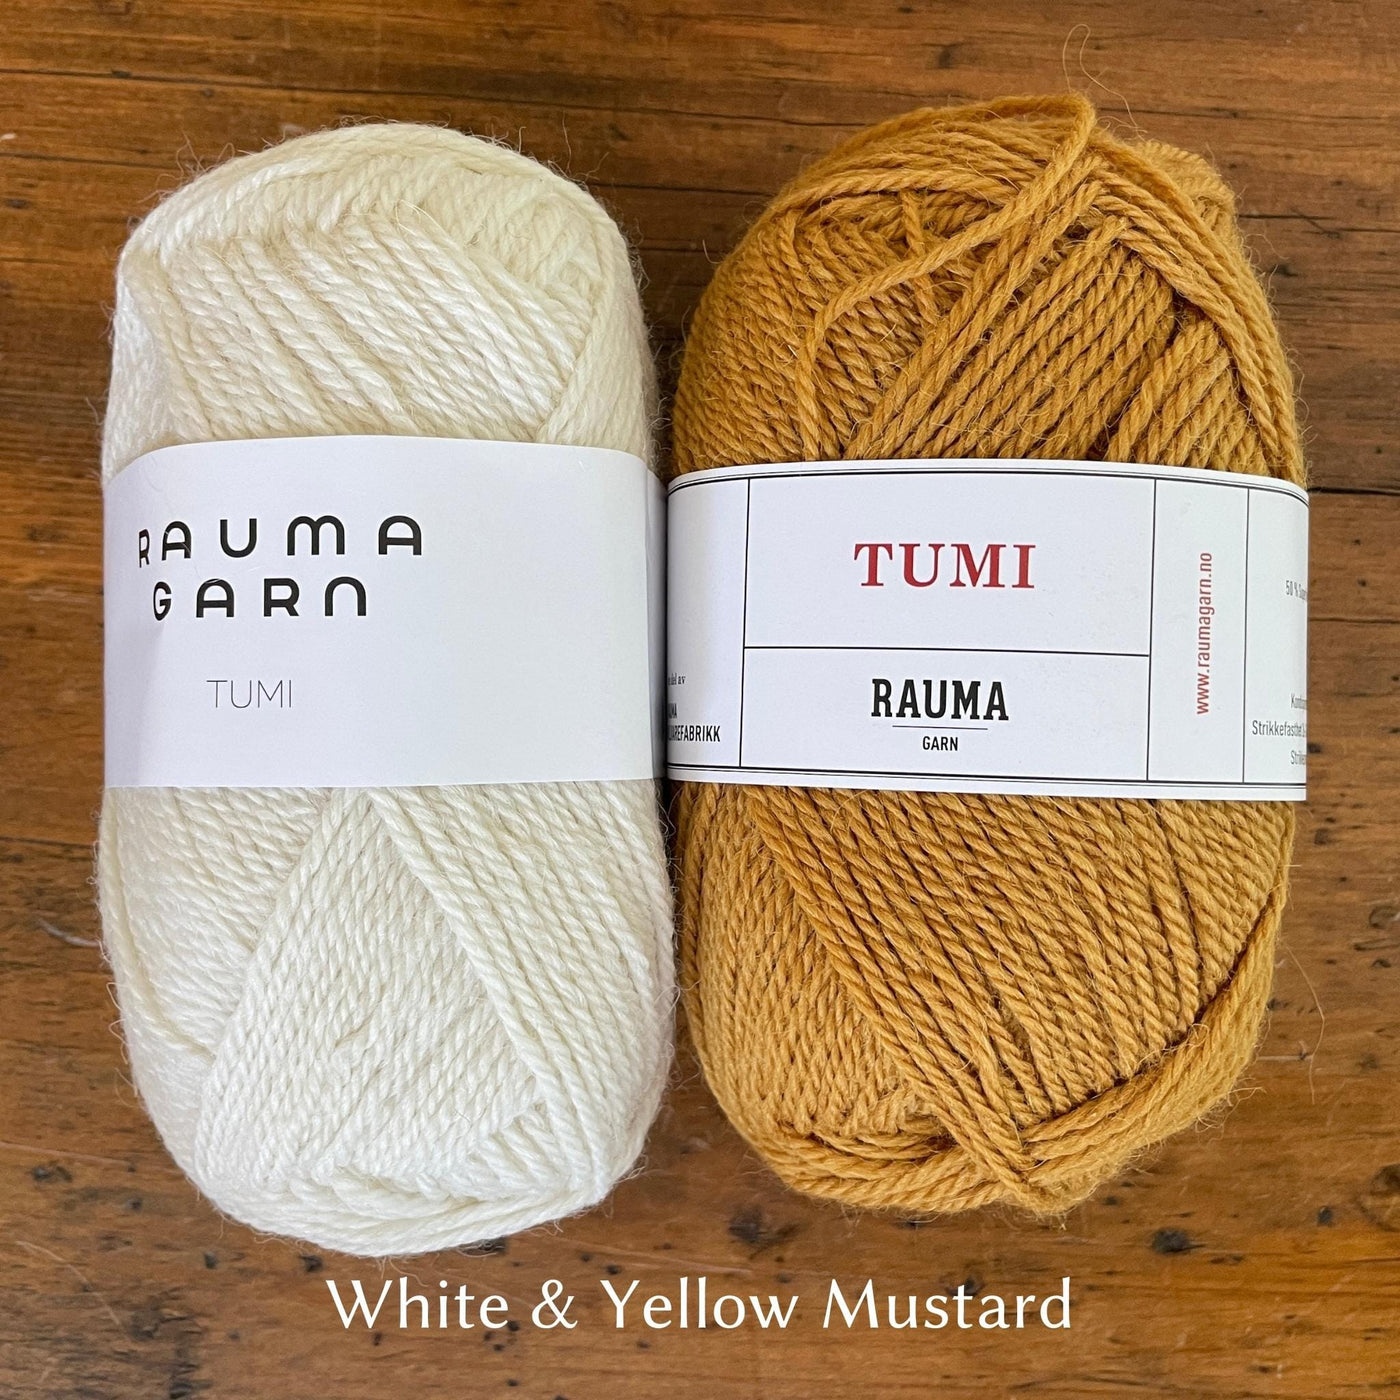 Rauma Tumi yarn; one cream ball and one mustard yellow ball.